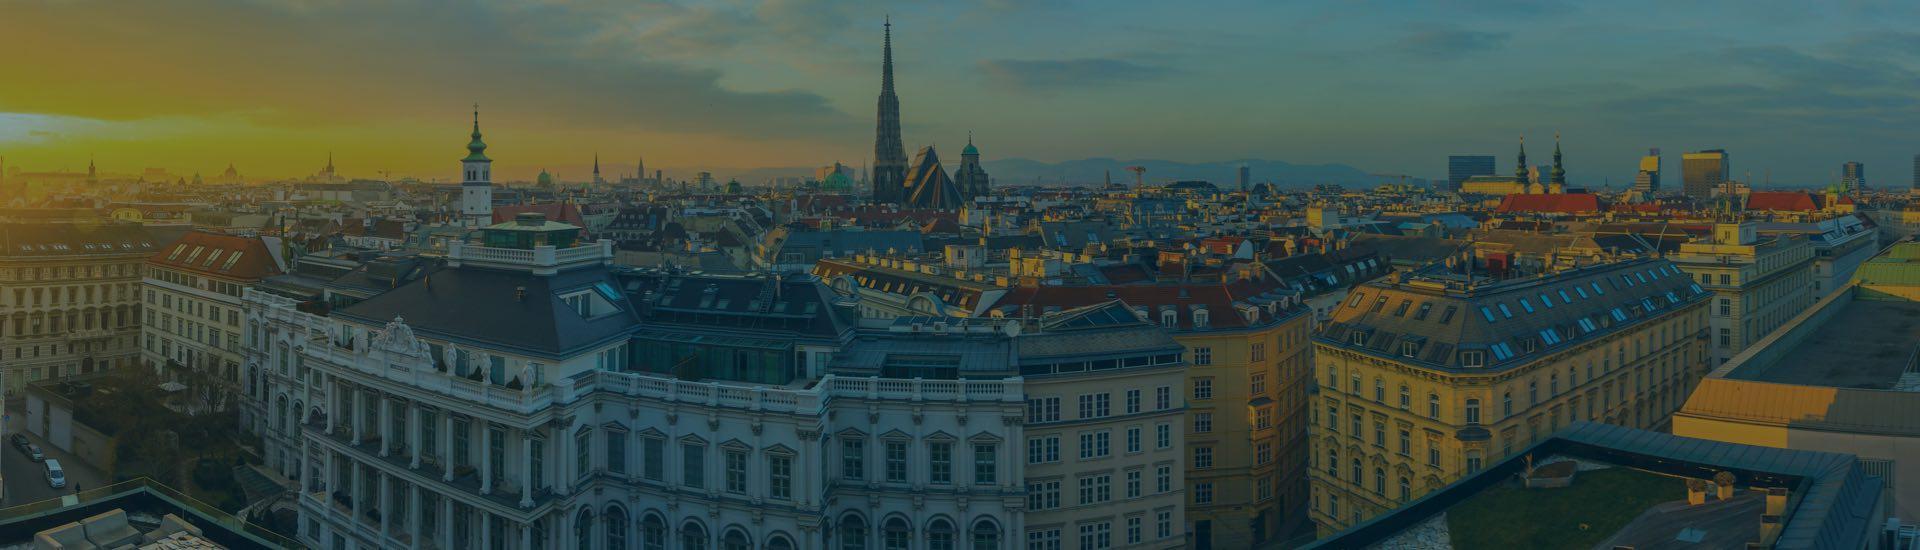 Find the Best Hotels in Vienna